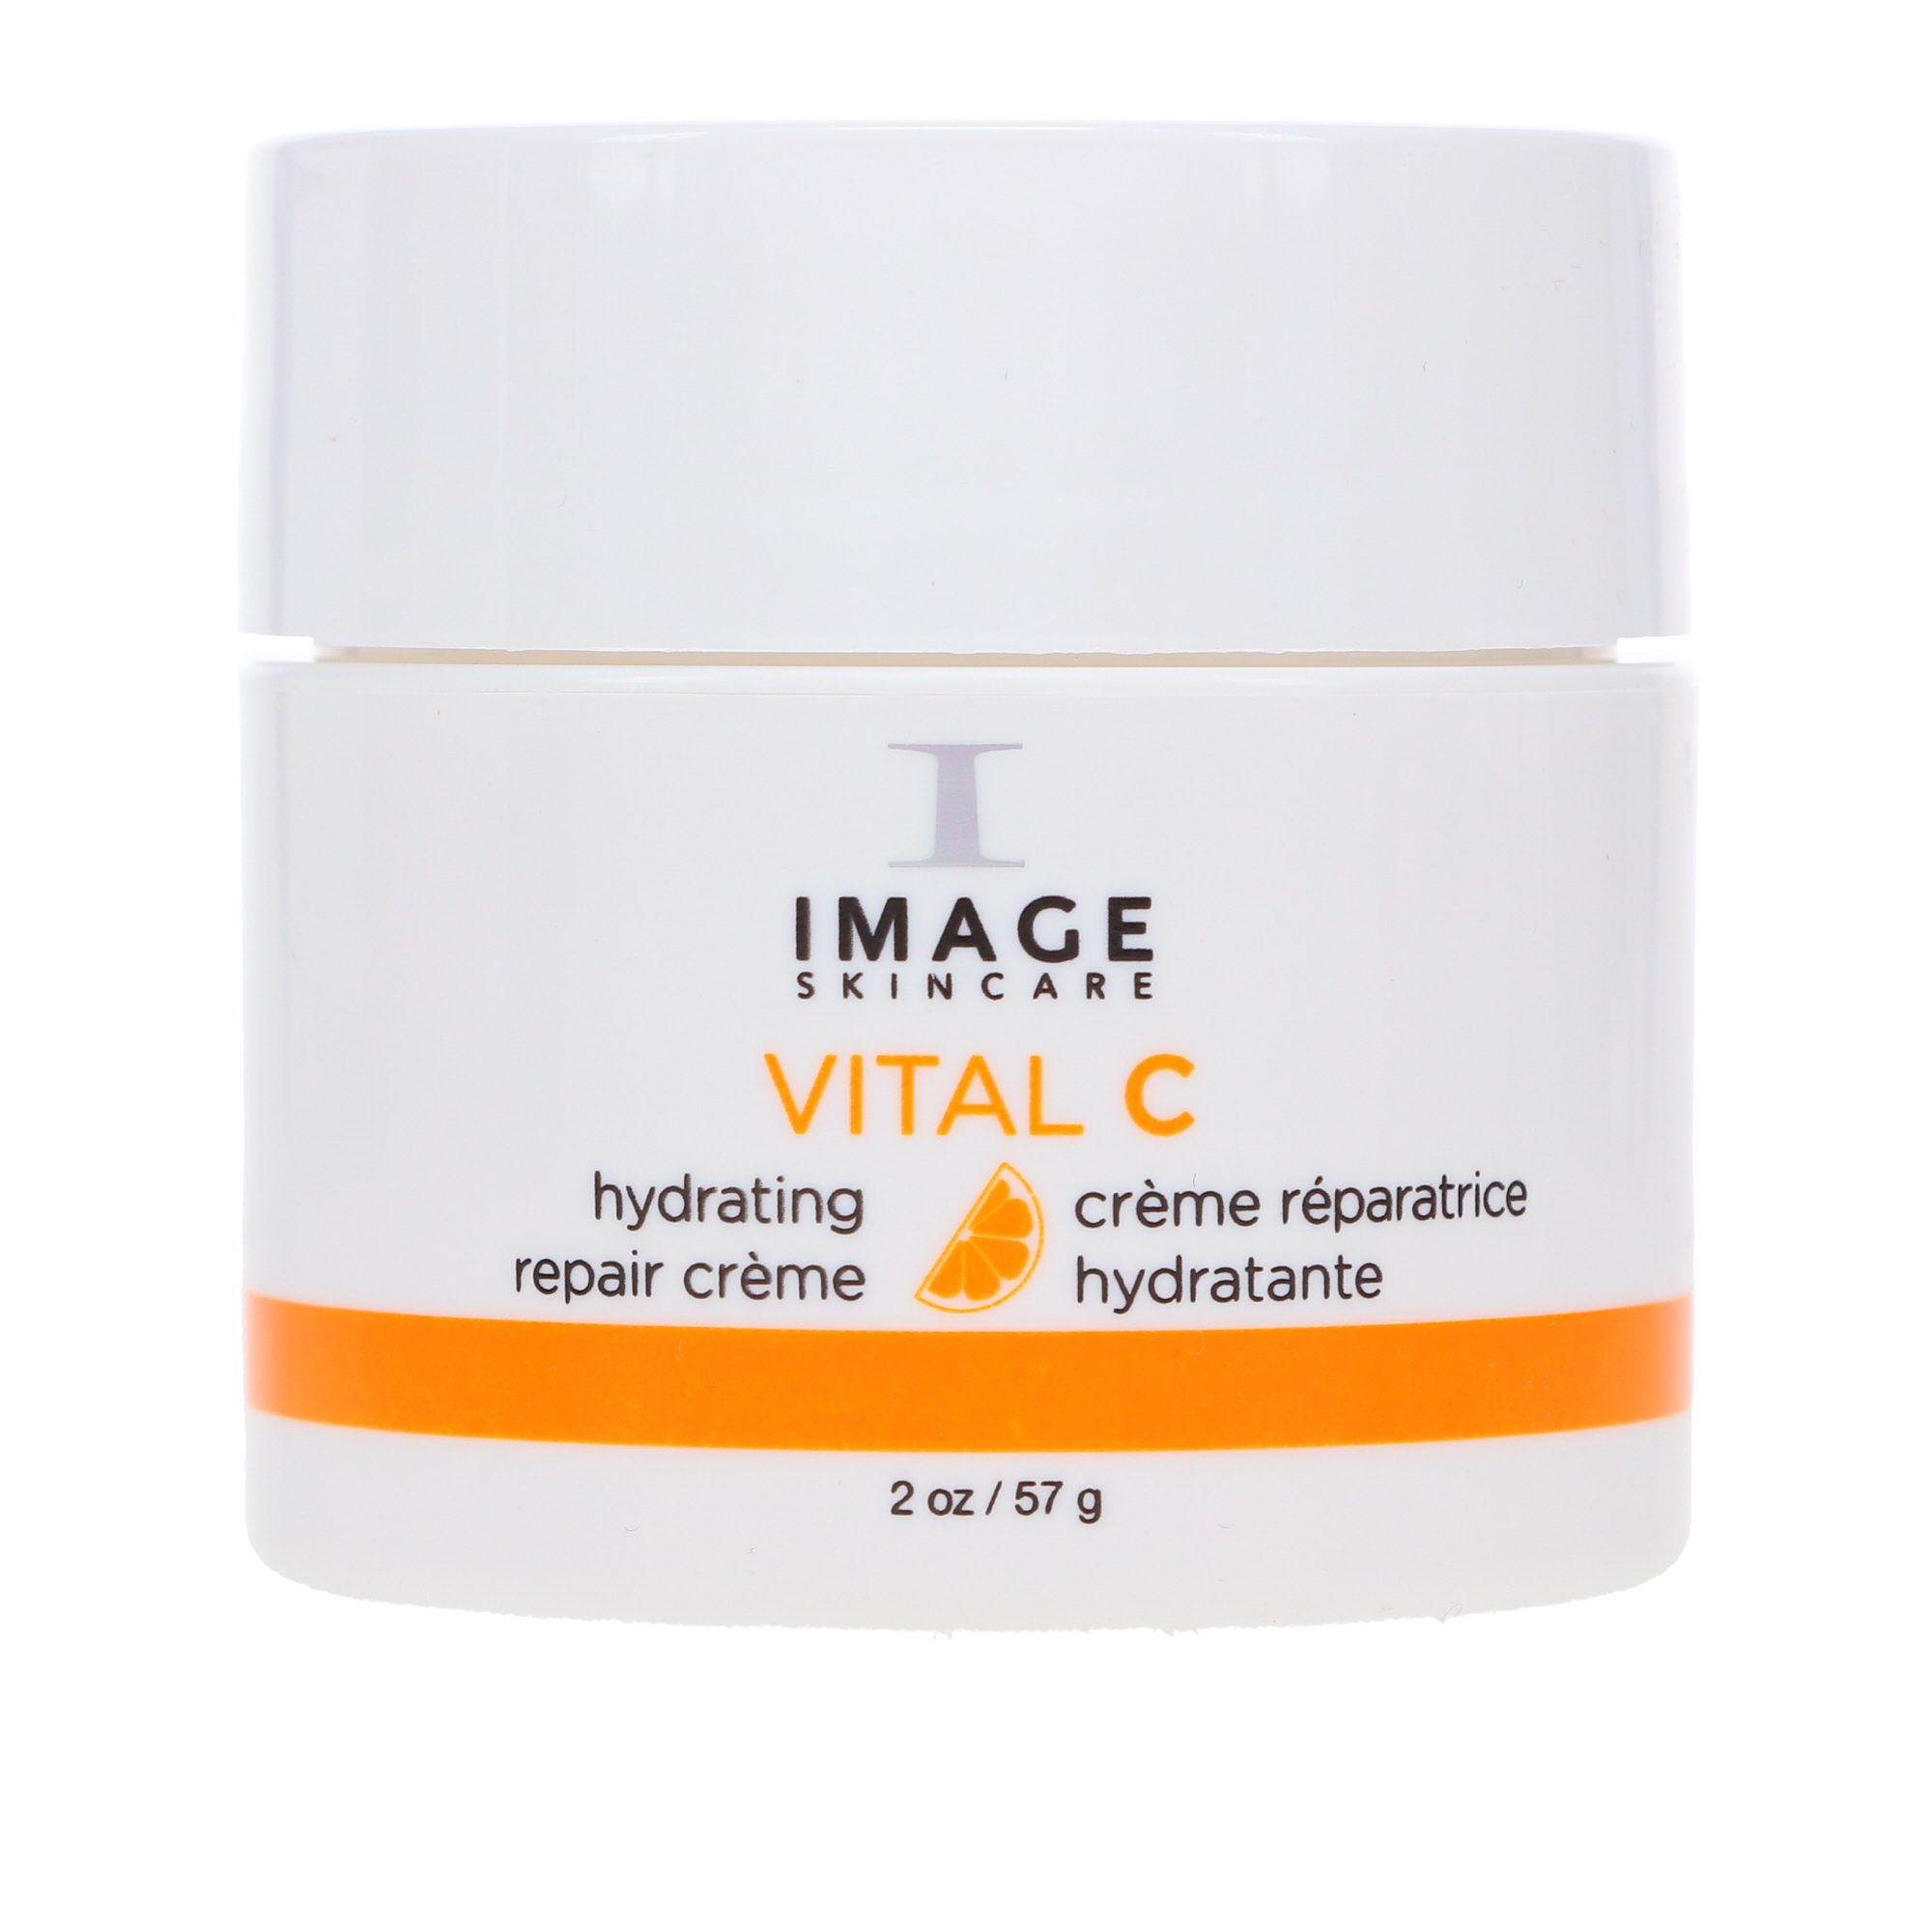 IMAGE Skincare Vital C Hydrating Repair Creme 2 oz - image 3 of 8